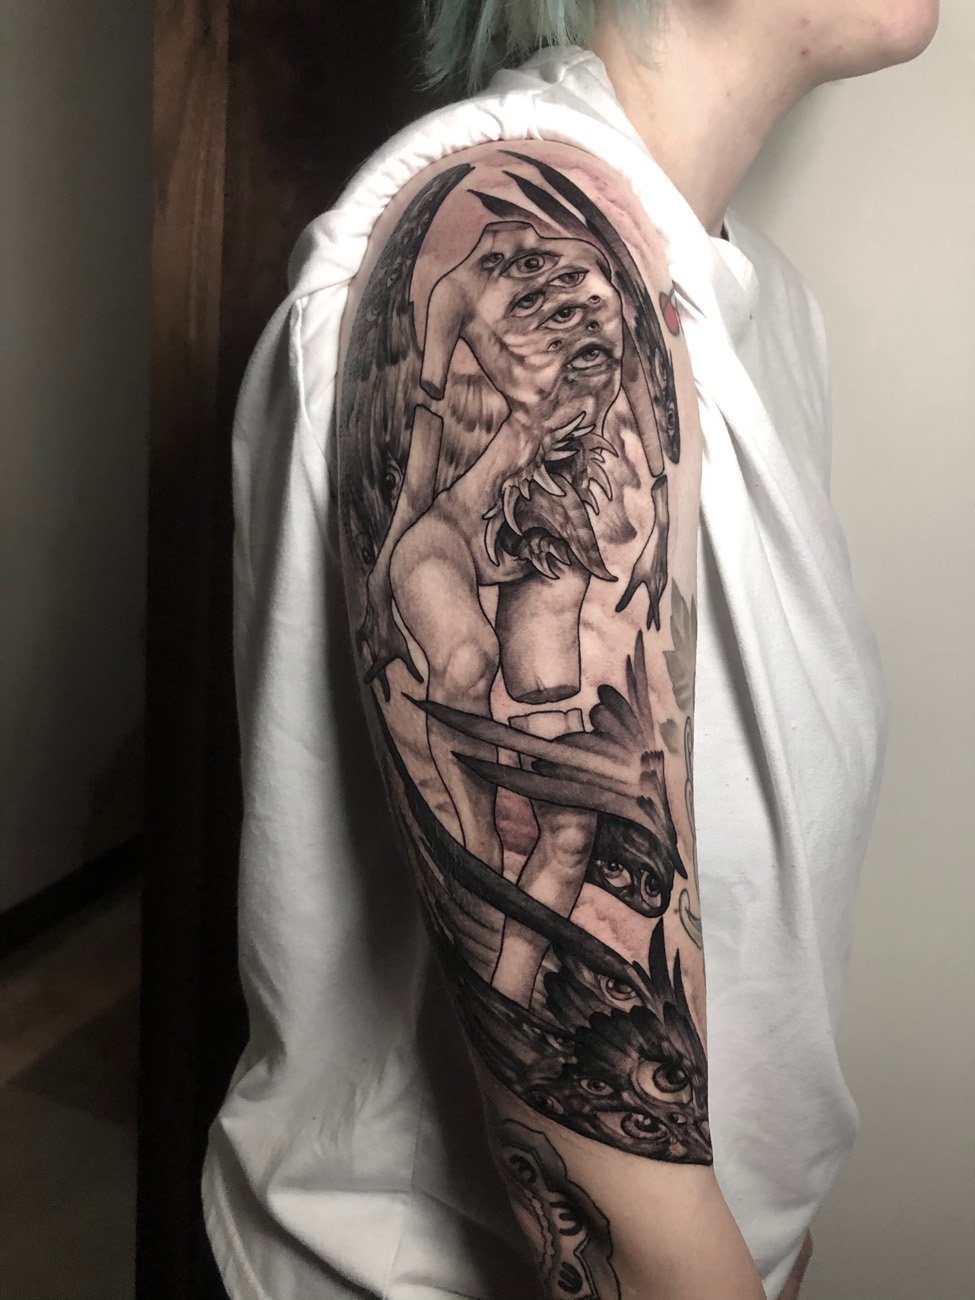 Orlando Tattoo Artist Scott “CoolAid” Irwin Hart